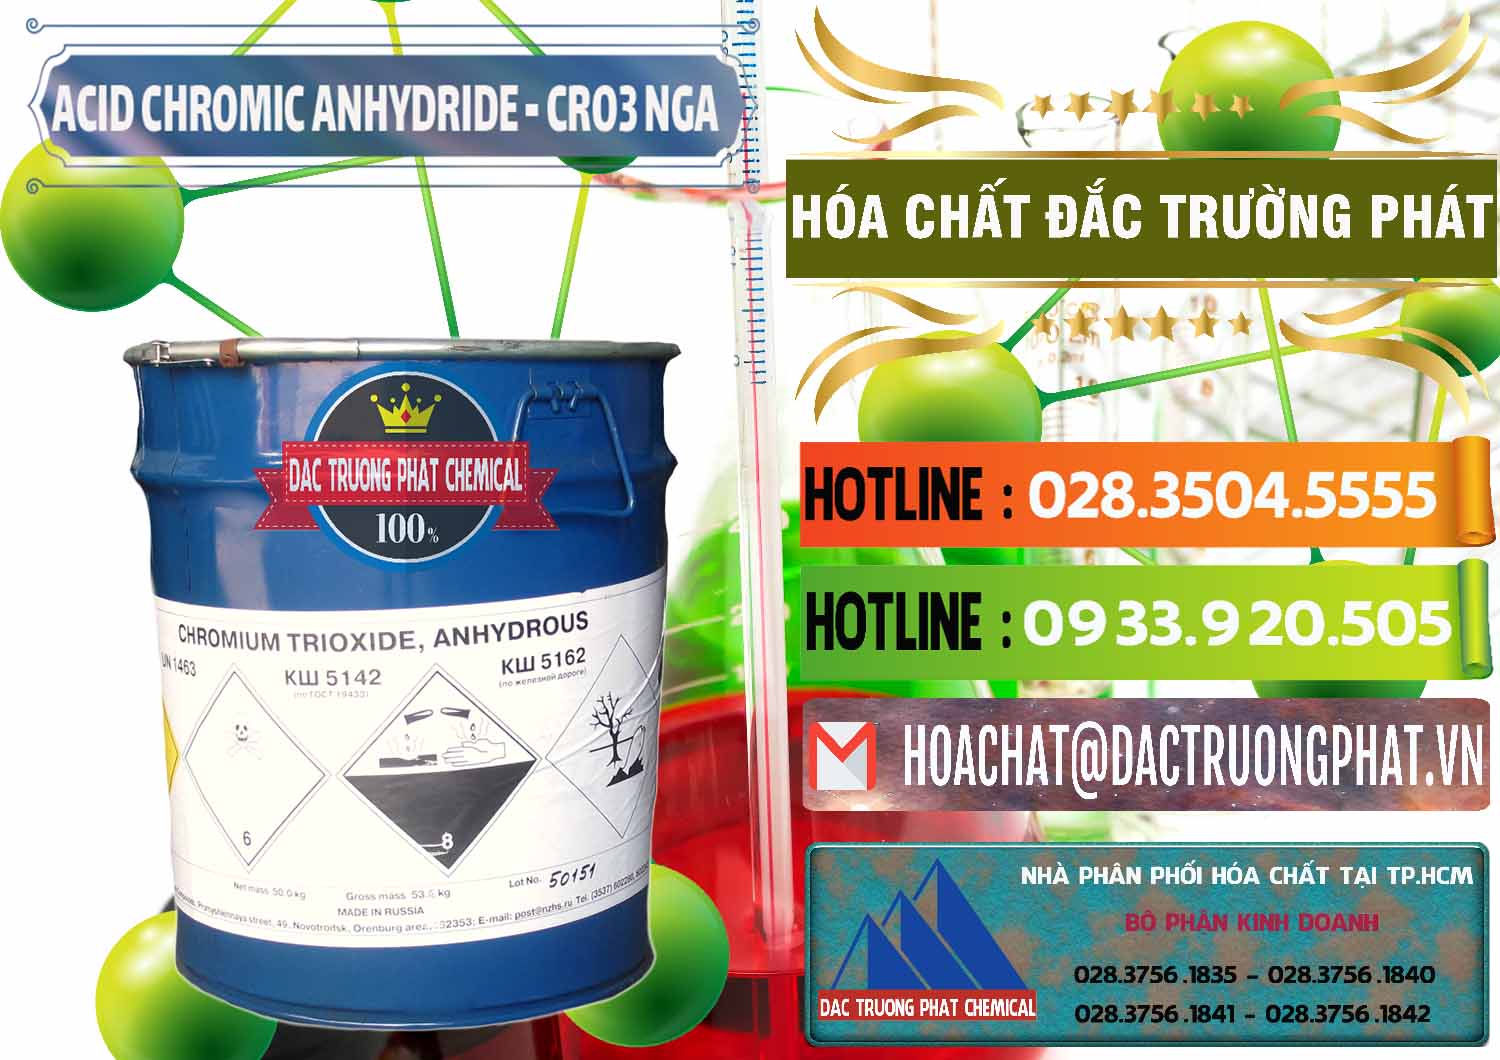 Nơi bán và cung ứng Acid Chromic Anhydride - Cromic CRO3 Nga Russia - 0006 - Đơn vị cung cấp - kinh doanh hóa chất tại TP.HCM - cungcaphoachat.com.vn